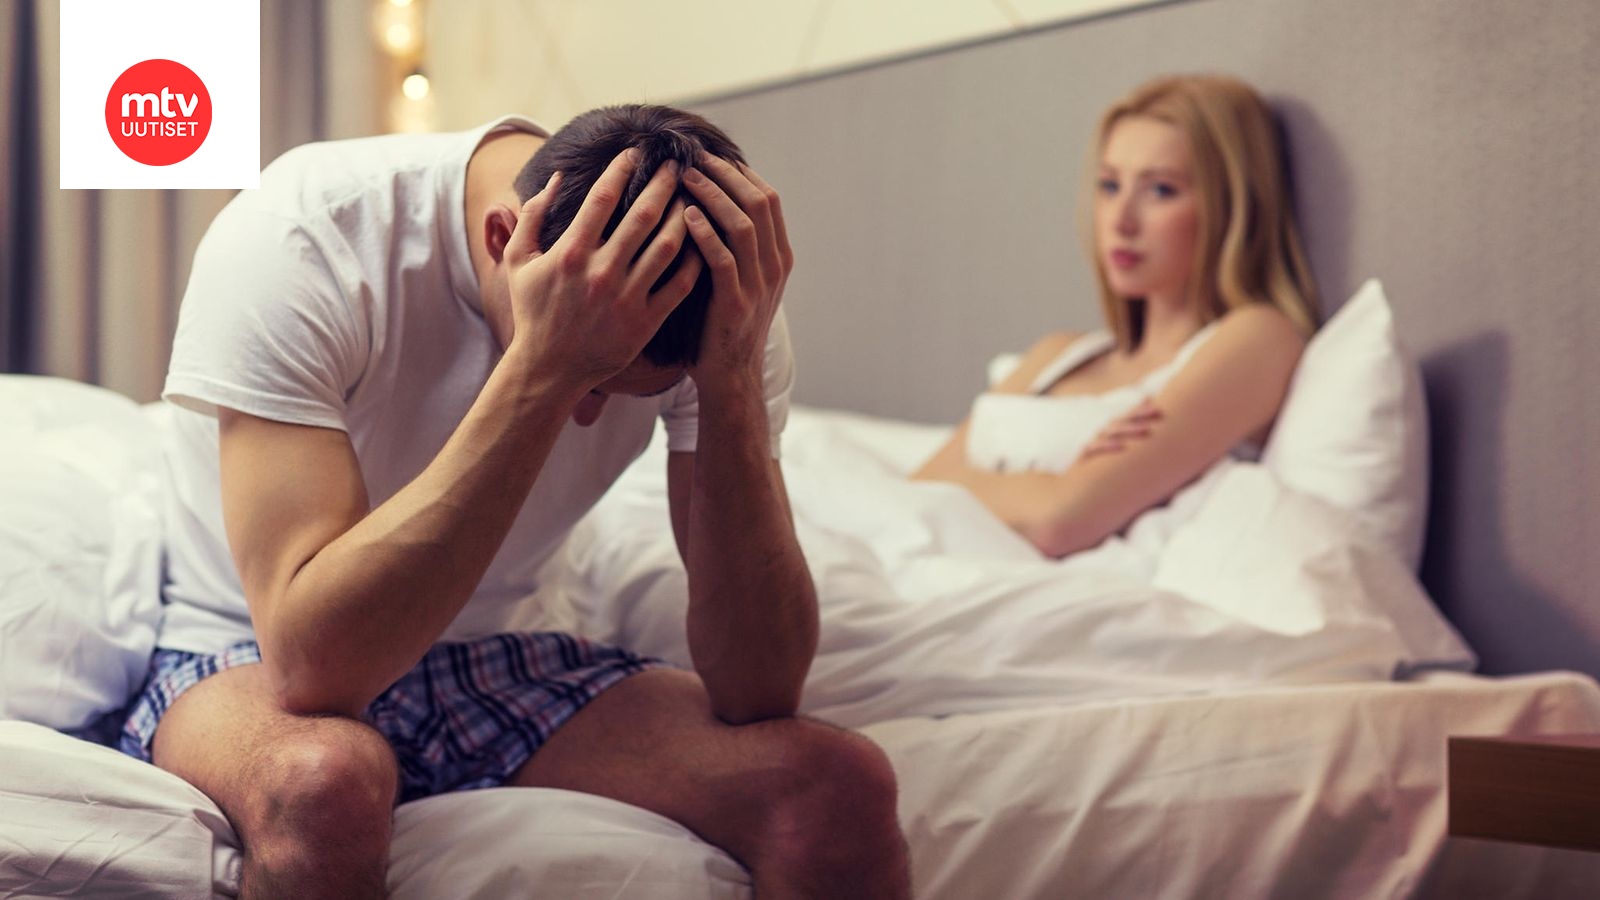 Tutkimus Runsas pornon katselu vaikuttaa miesten ja naisten seksielämään eri tavoin